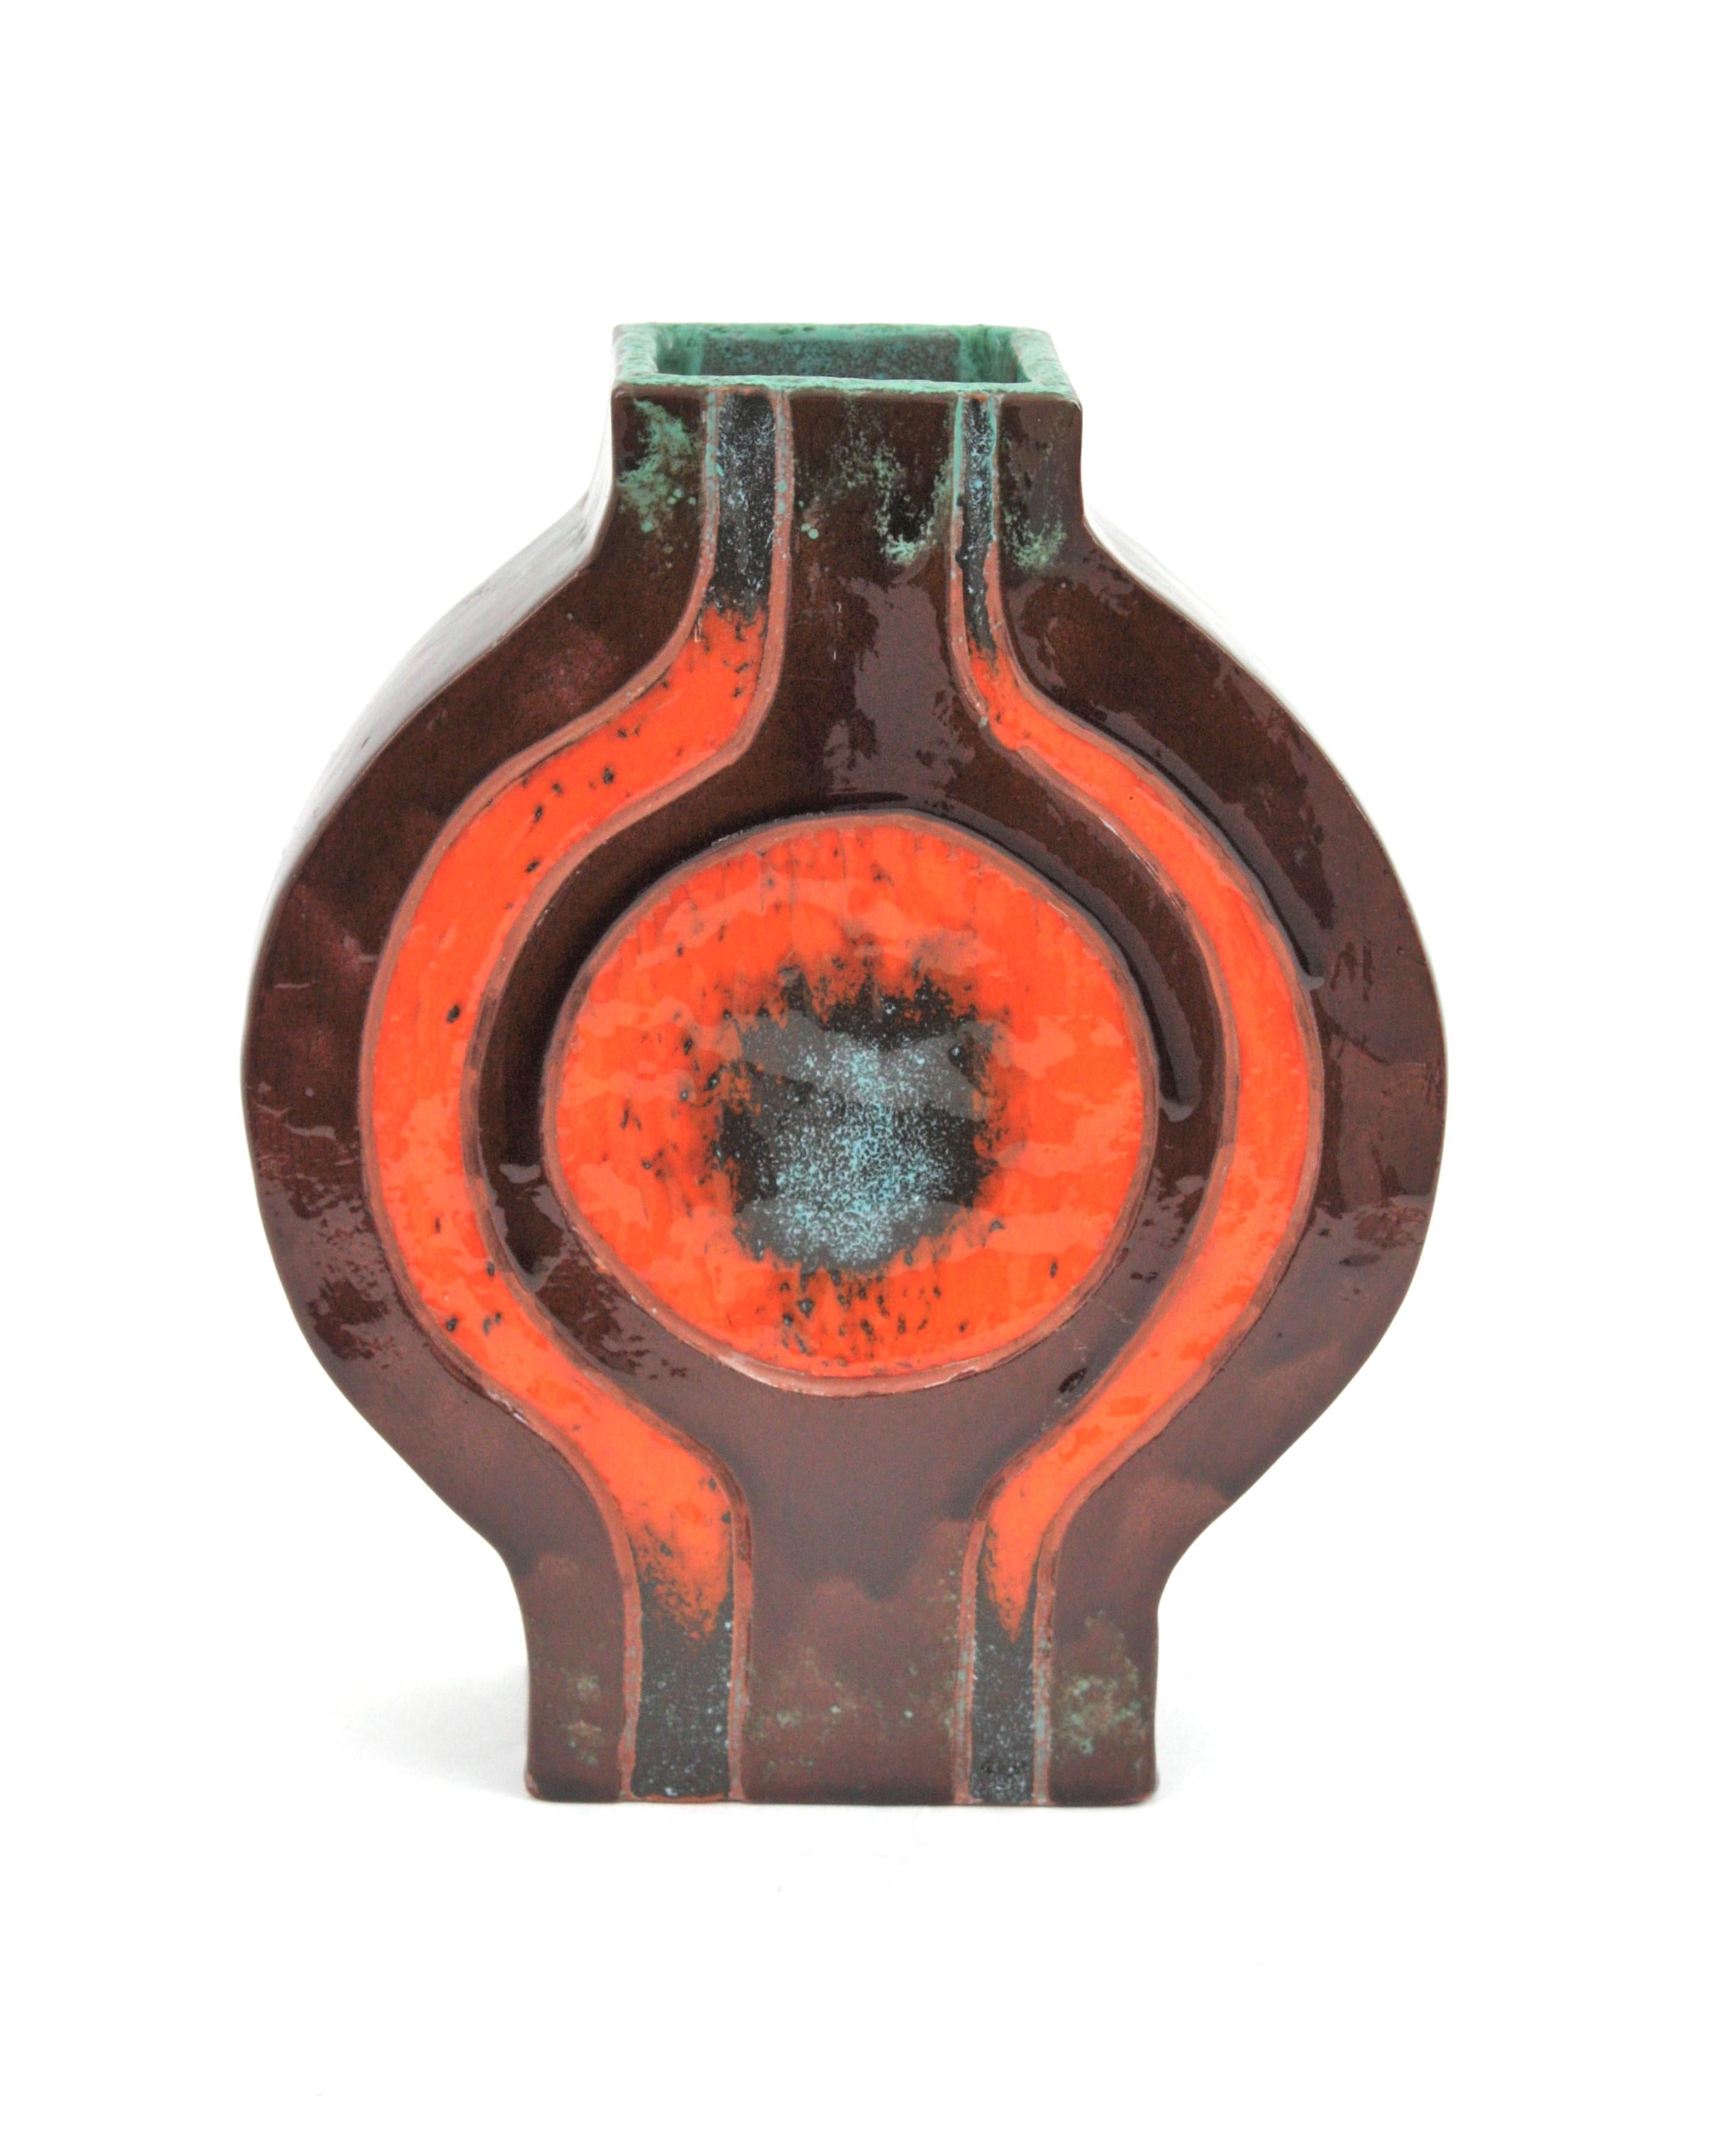 Auffällige geometrische Vase aus glasierter Keramik, Spanien, 1970er Jahre
Orangefarbene und braune Keramik mit türkisfarbenen Akzenten.
Zu verwenden als dekorative Vase, Blumenvase. Allein oder als Teil einer Keramiksammlung